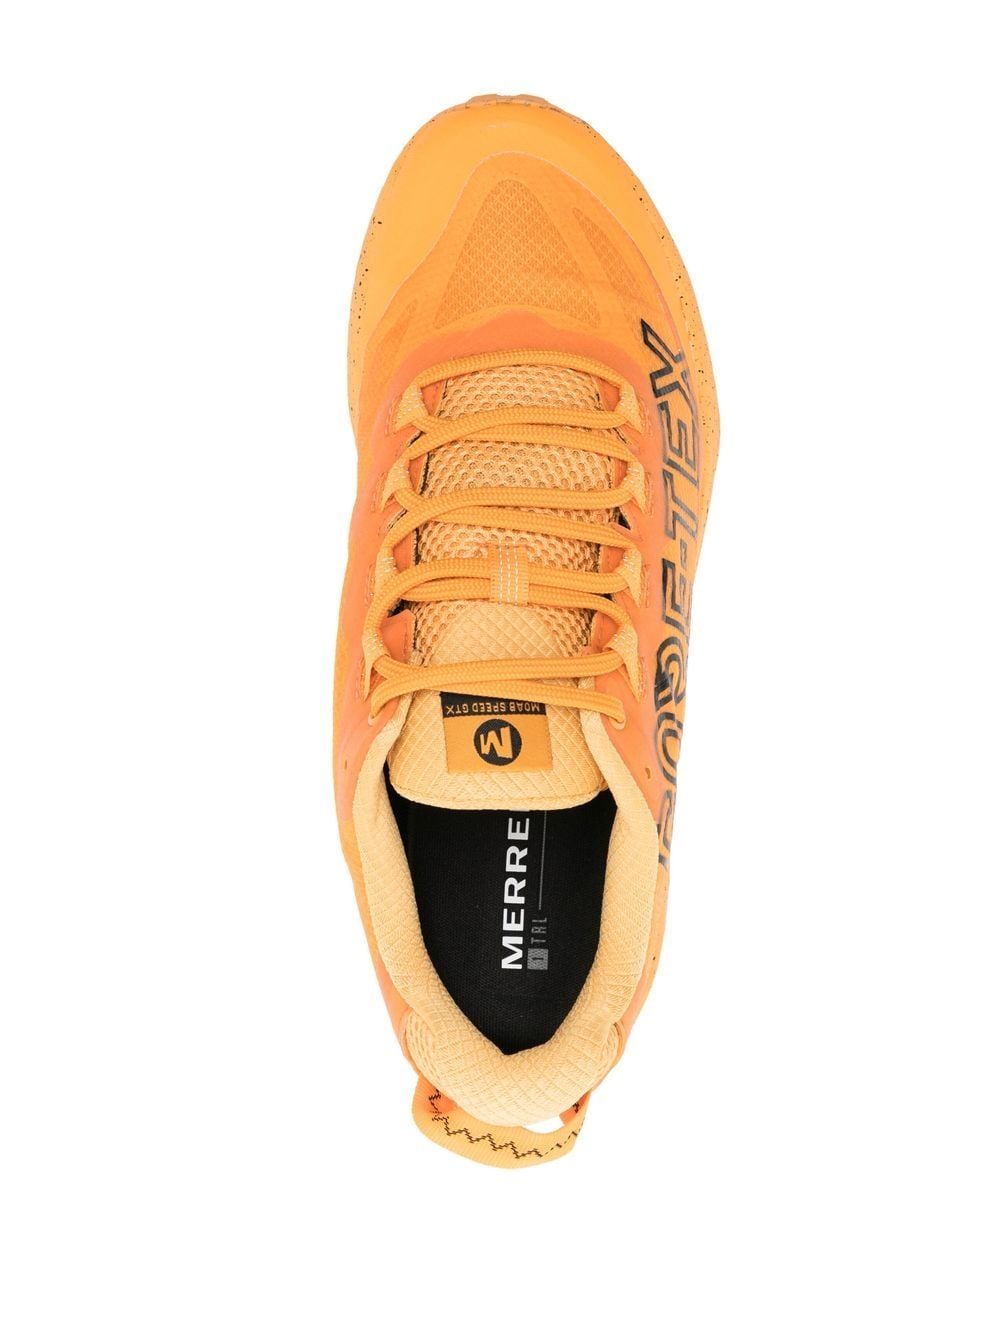 Merrell Moab Speed Gtx 1trl Sneakers In Orange | ModeSens